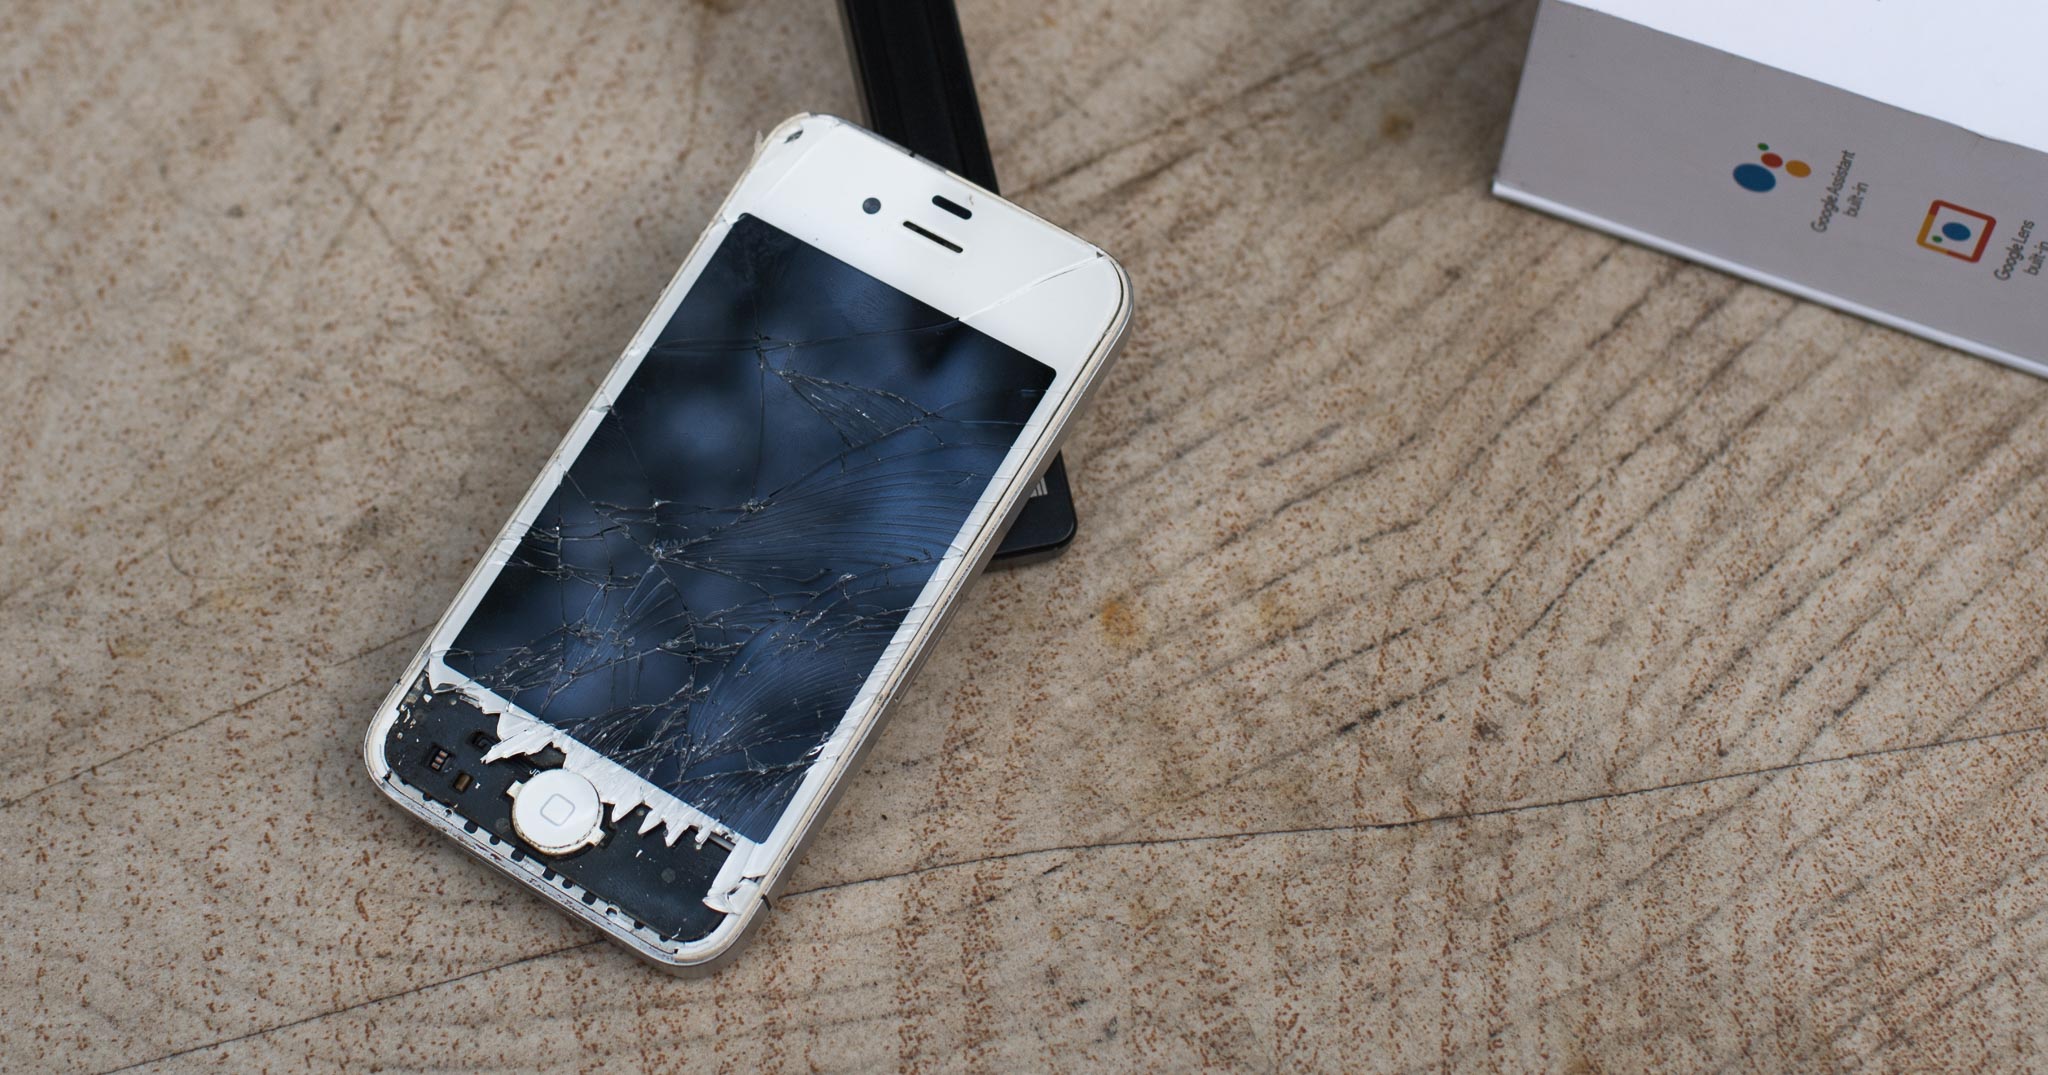 Thử độ bền iPhone 4 sau 7 năm sử dụng: máy nát nhưng khung vẫn còn nguyên